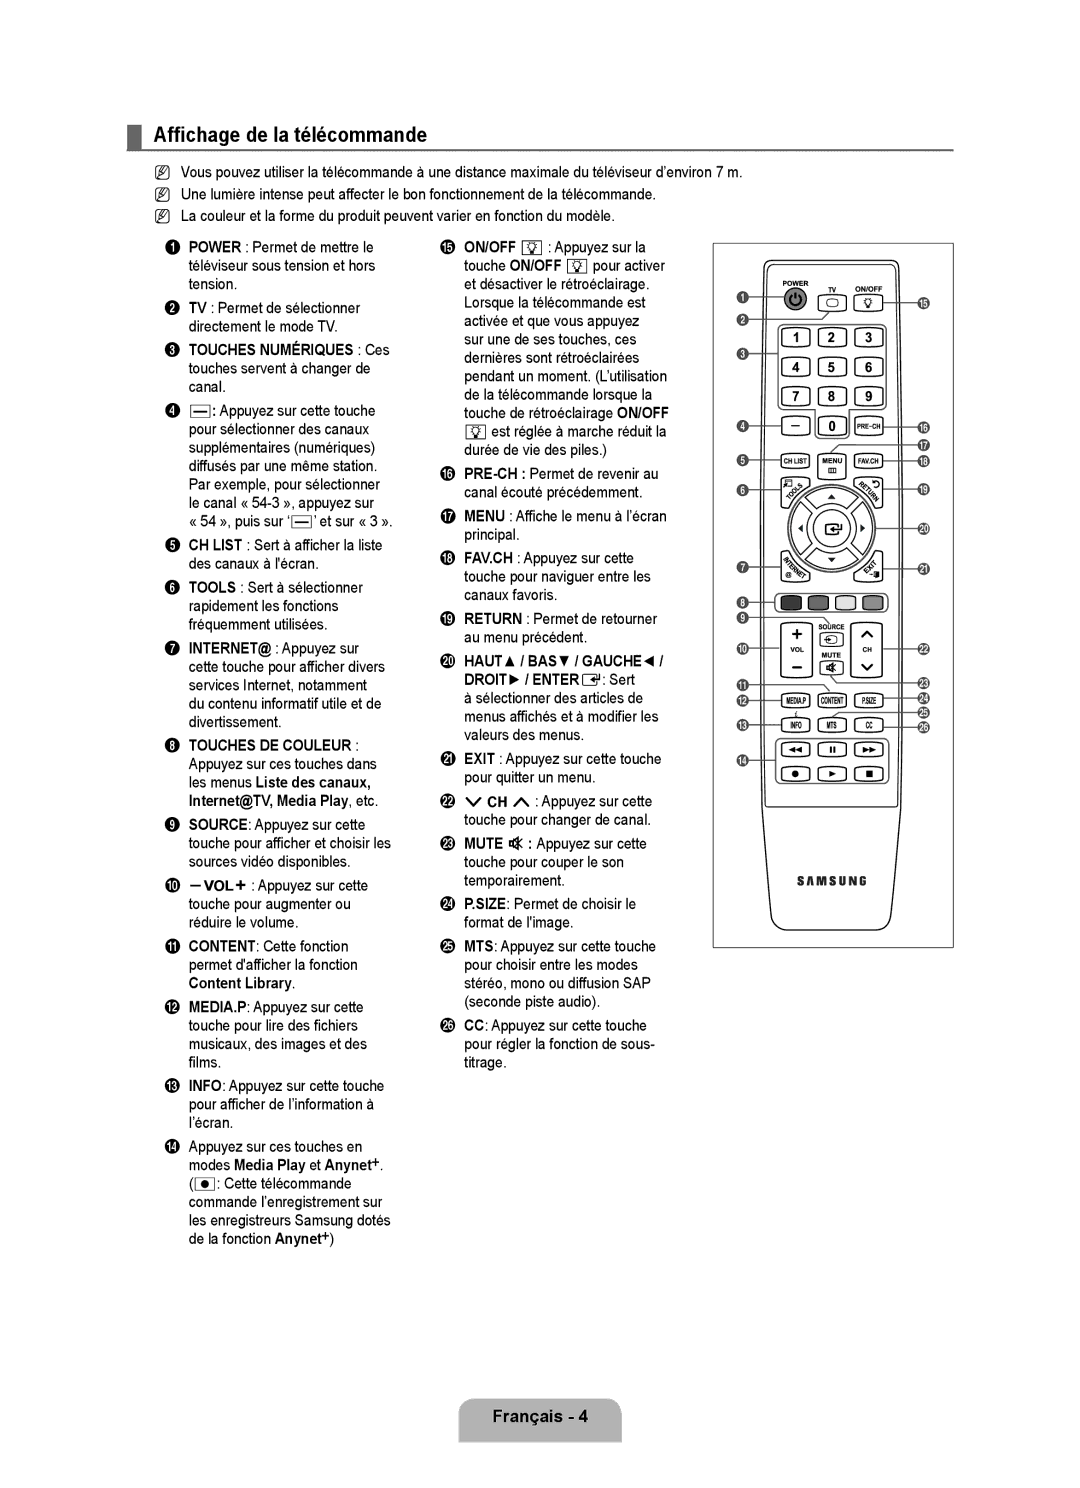 Samsung LN6B60 user manual Affichage de la télécommande, Touches Numériques Ces touches servent à changer de canal 